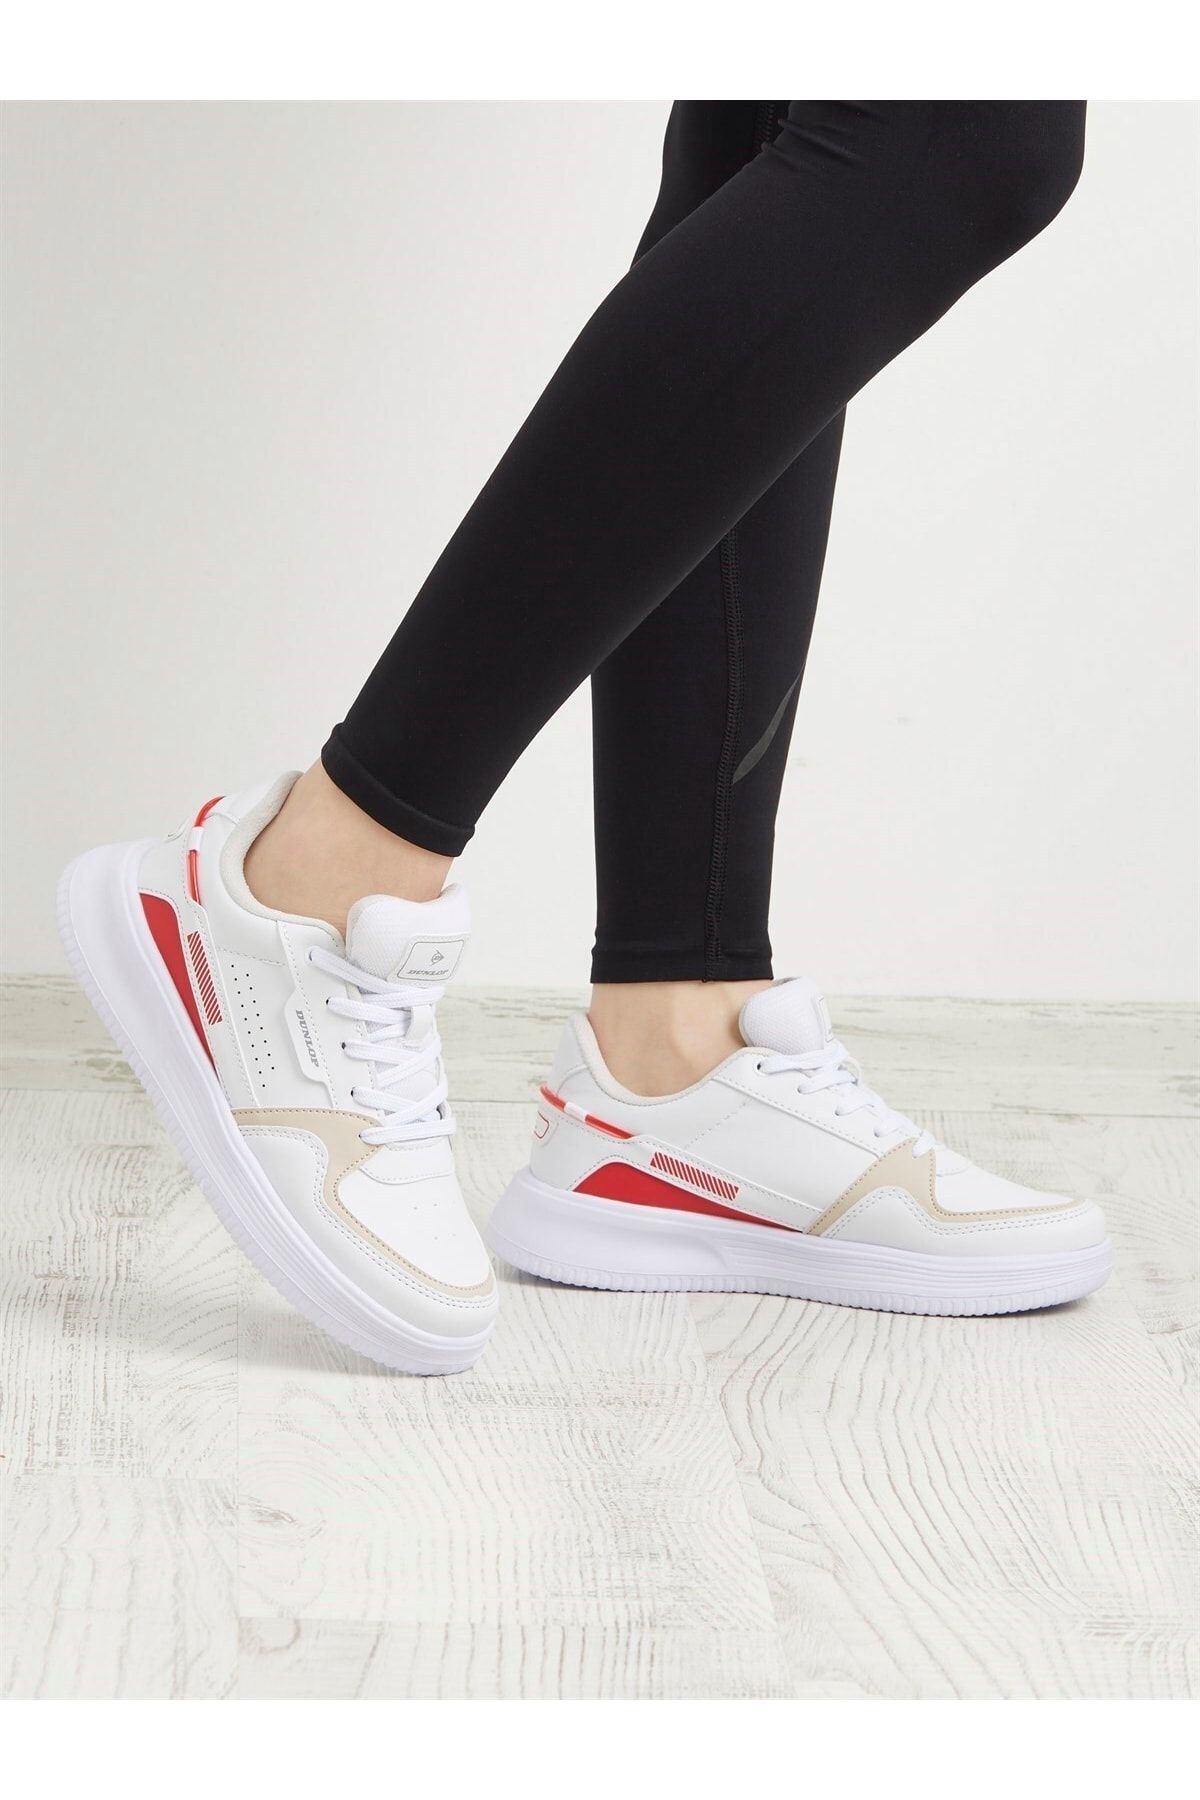 Dunlop Kadın Sneaker Günlük Spor Ayakkabı Beyaz Kırmızı 1793 V2